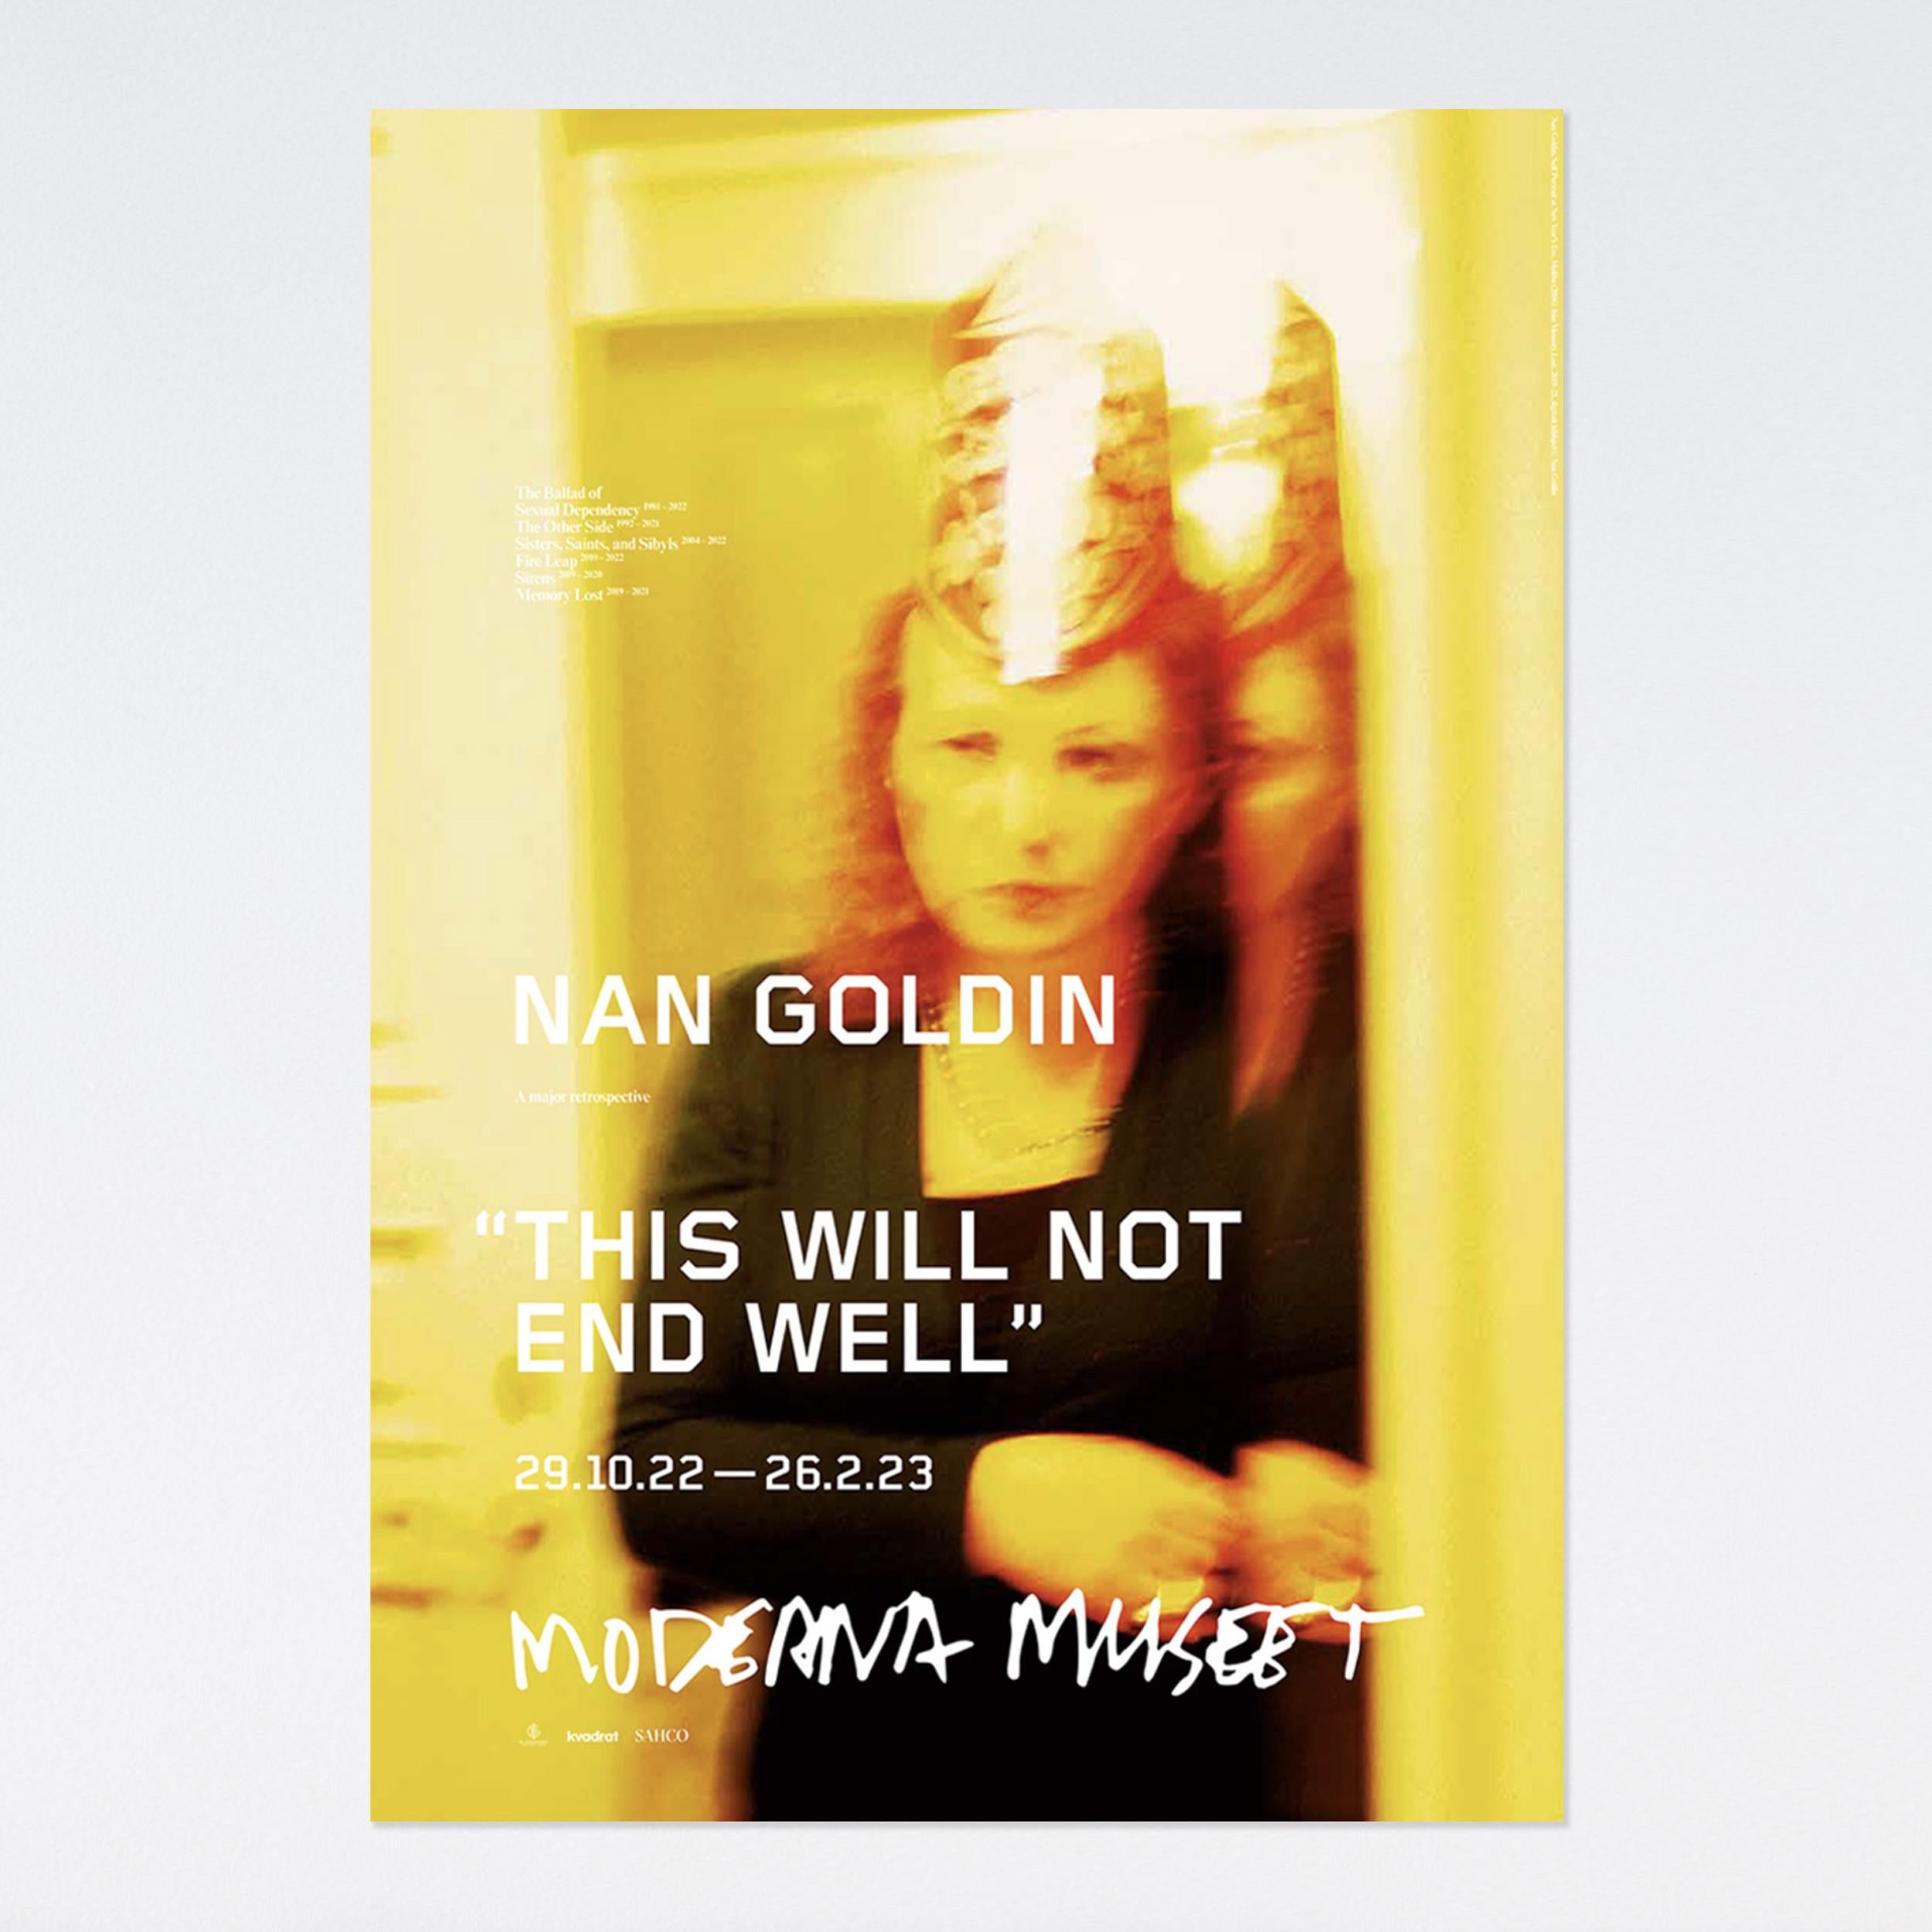 nan goldin exhibition poster